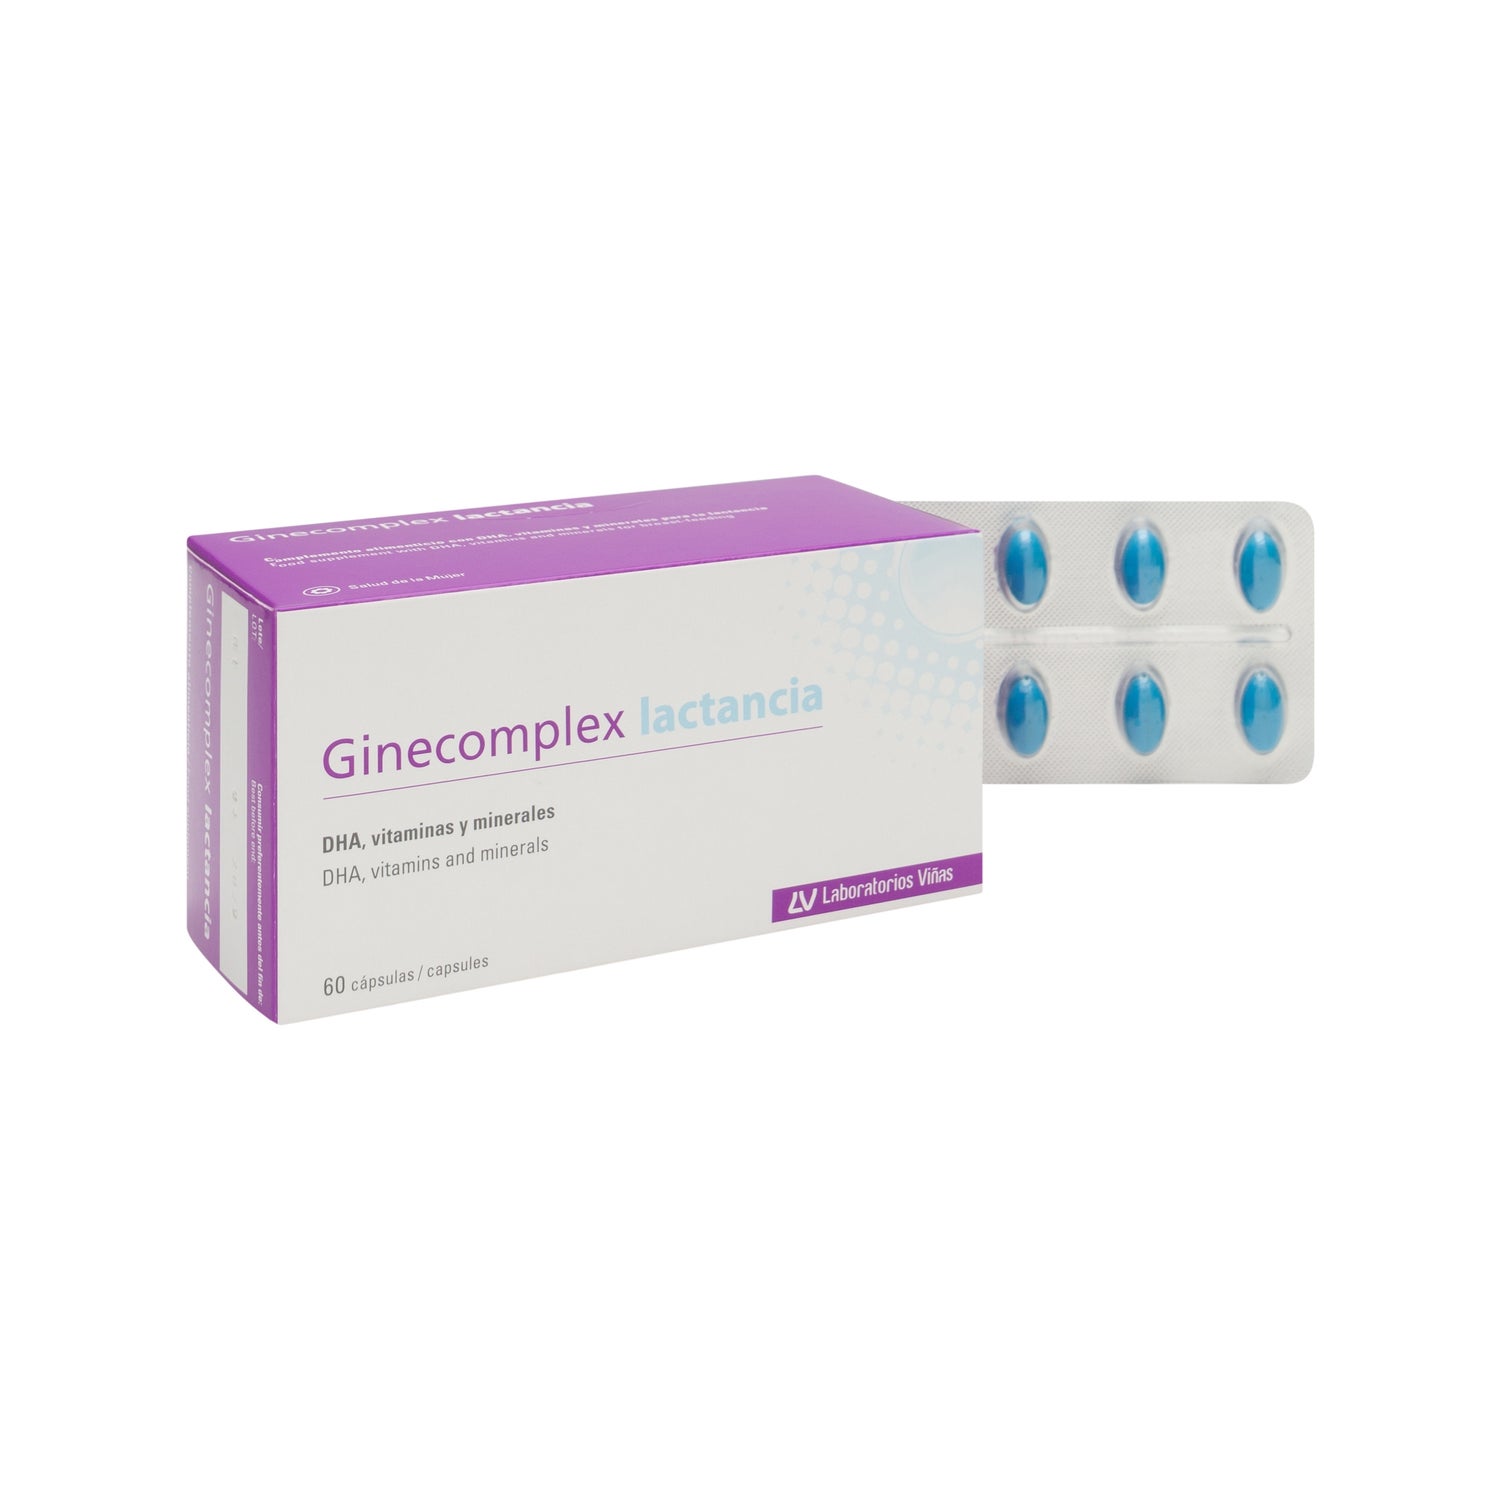 ginecomplex lactancia 60 c ps